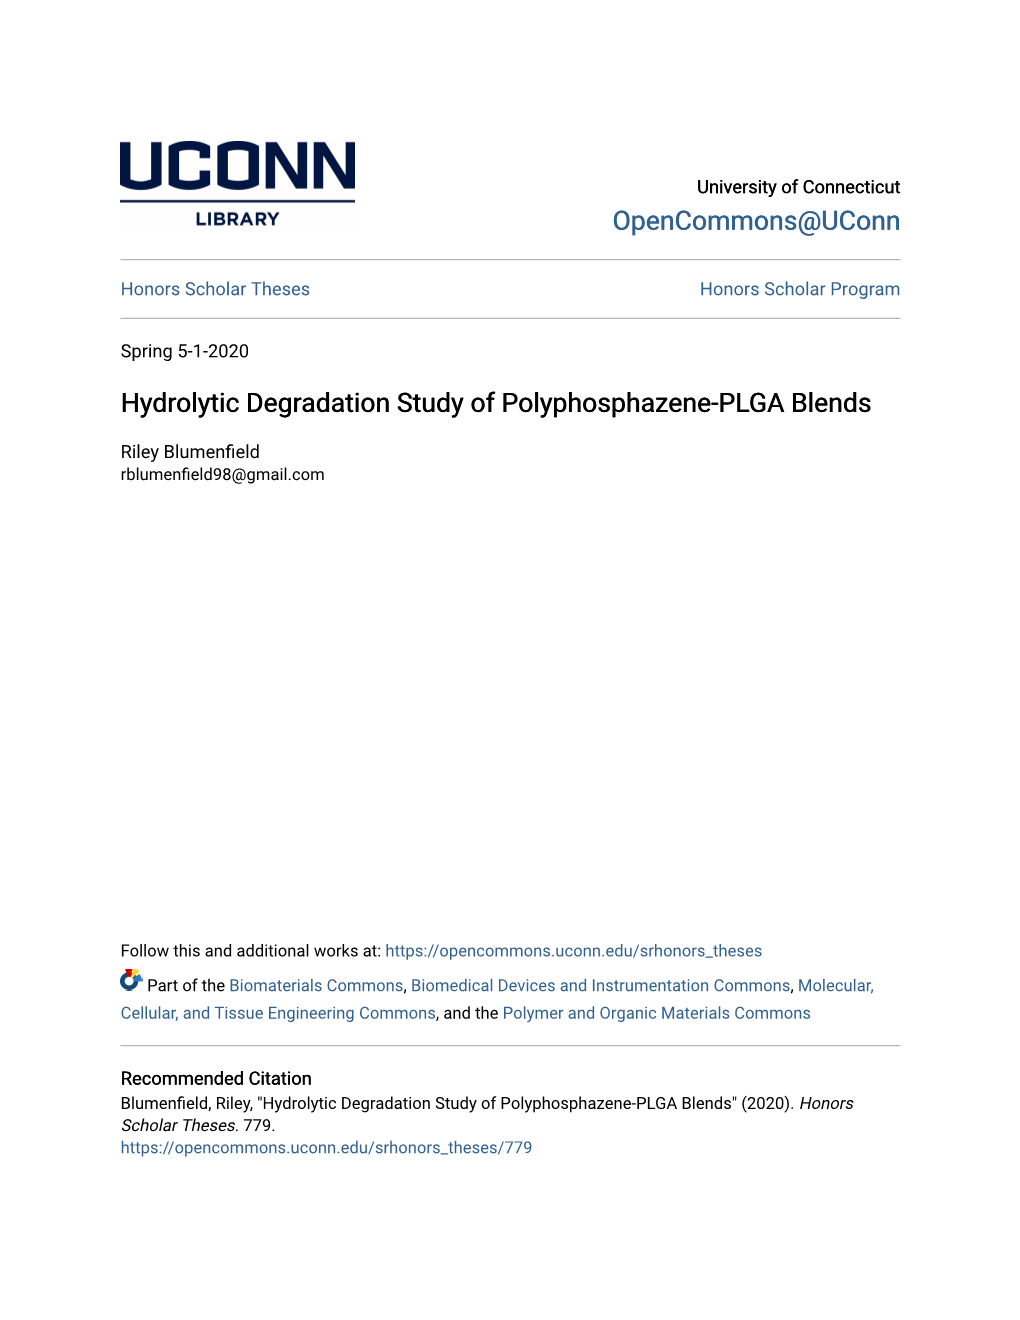 Hydrolytic Degradation Study of Polyphosphazene-PLGA Blends